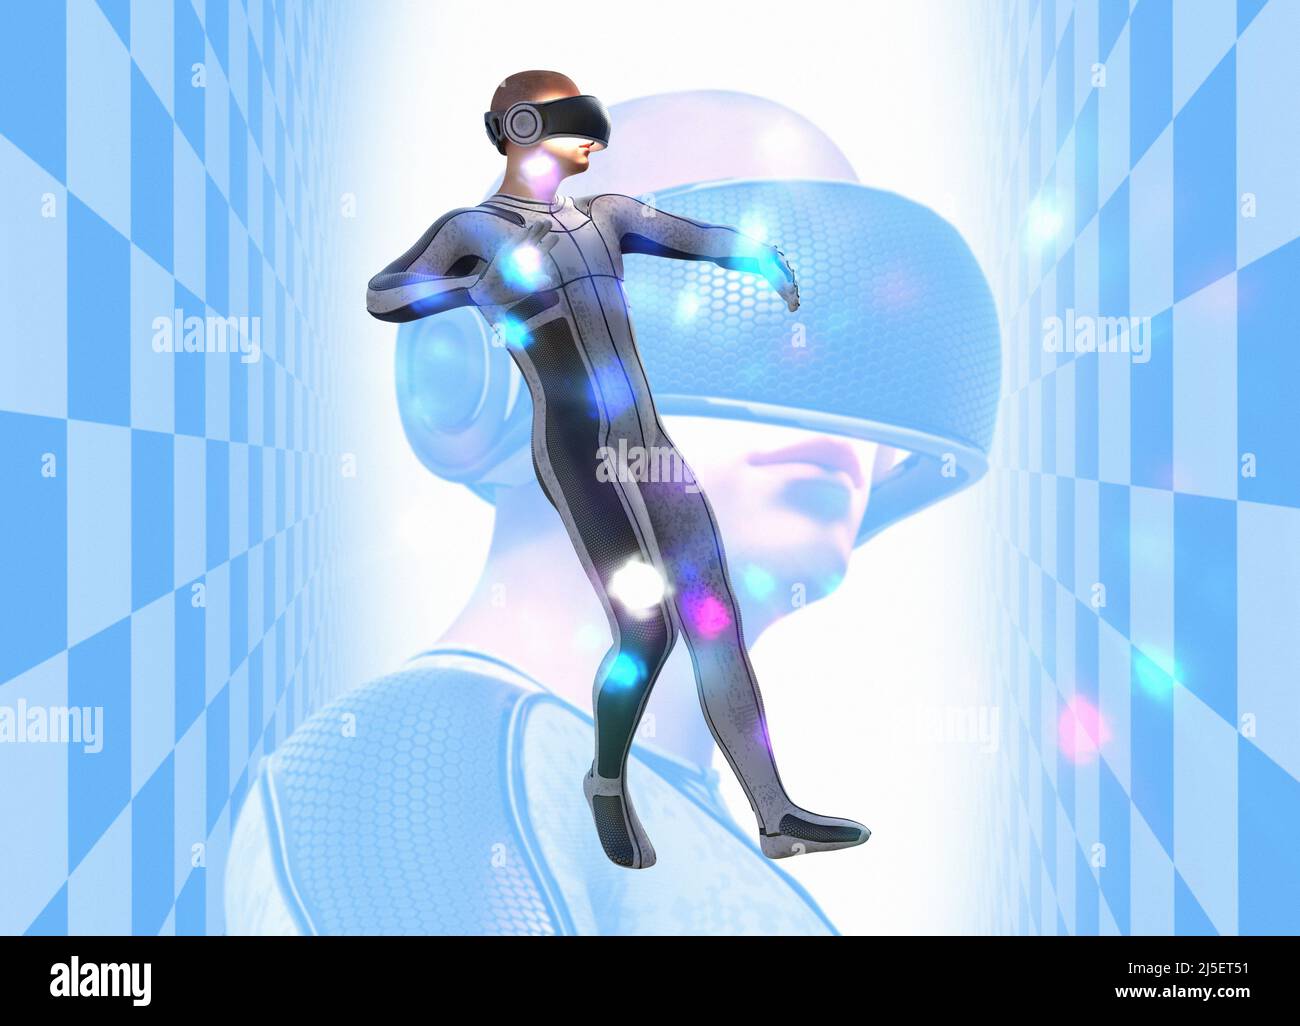 Homme portant un casque de réalité virtuelle, illustration Banque D'Images